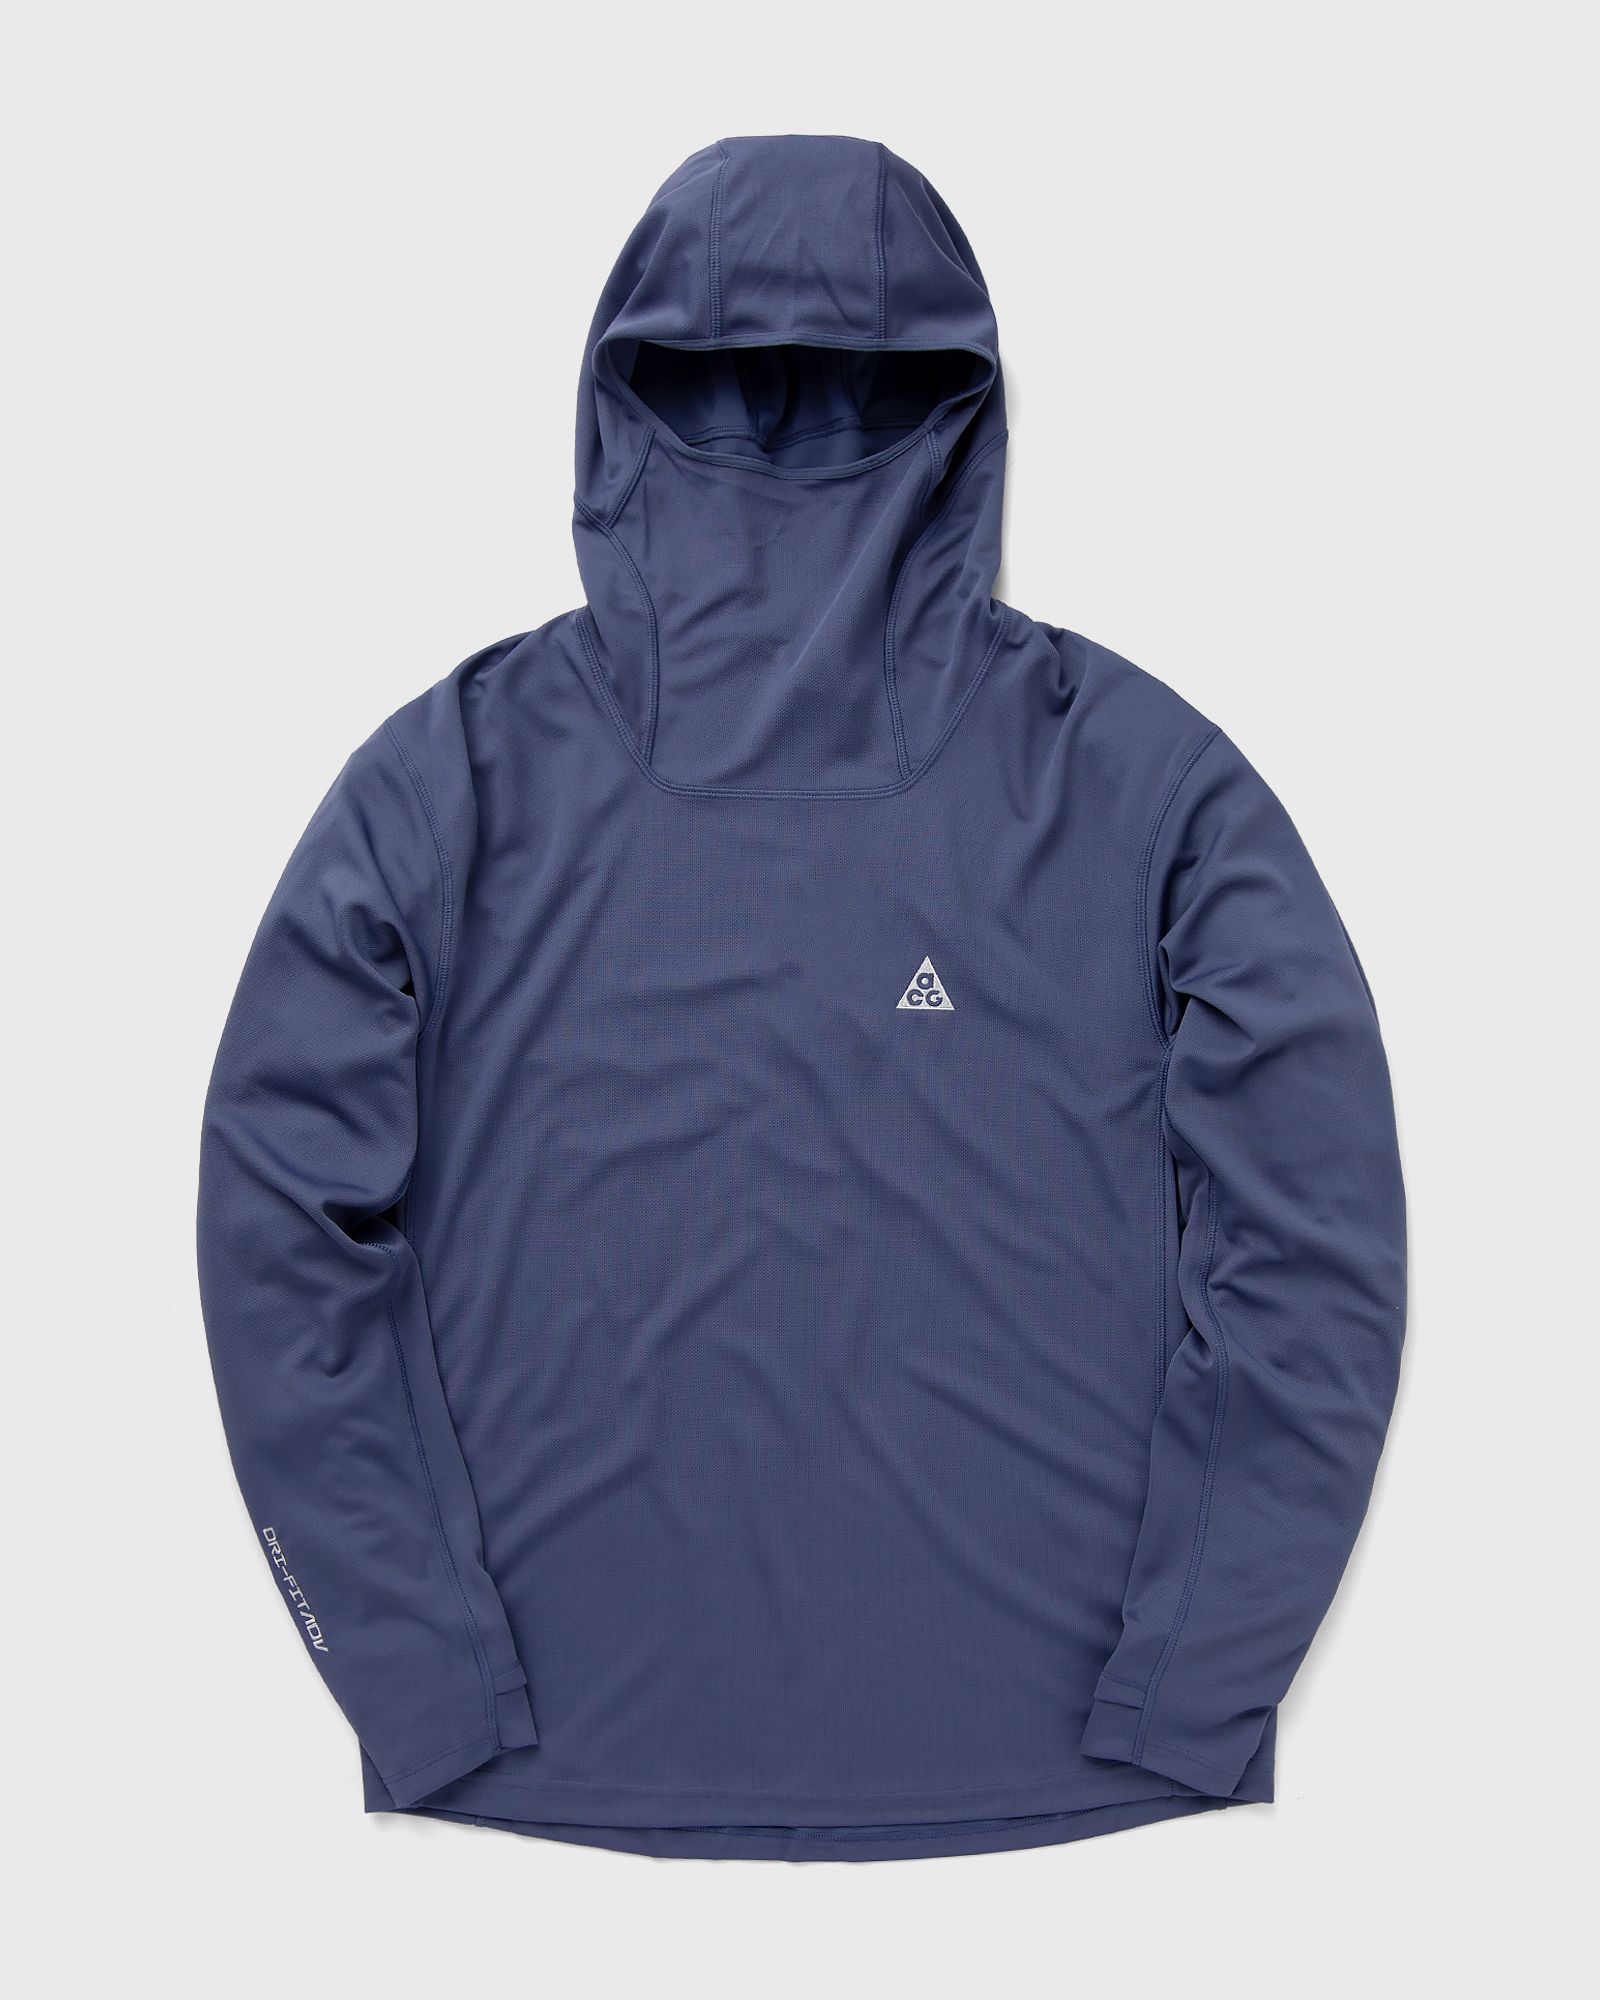 Nike - acg dri-fit adv "lava tree" hoodie men hoodies blue in größe:s